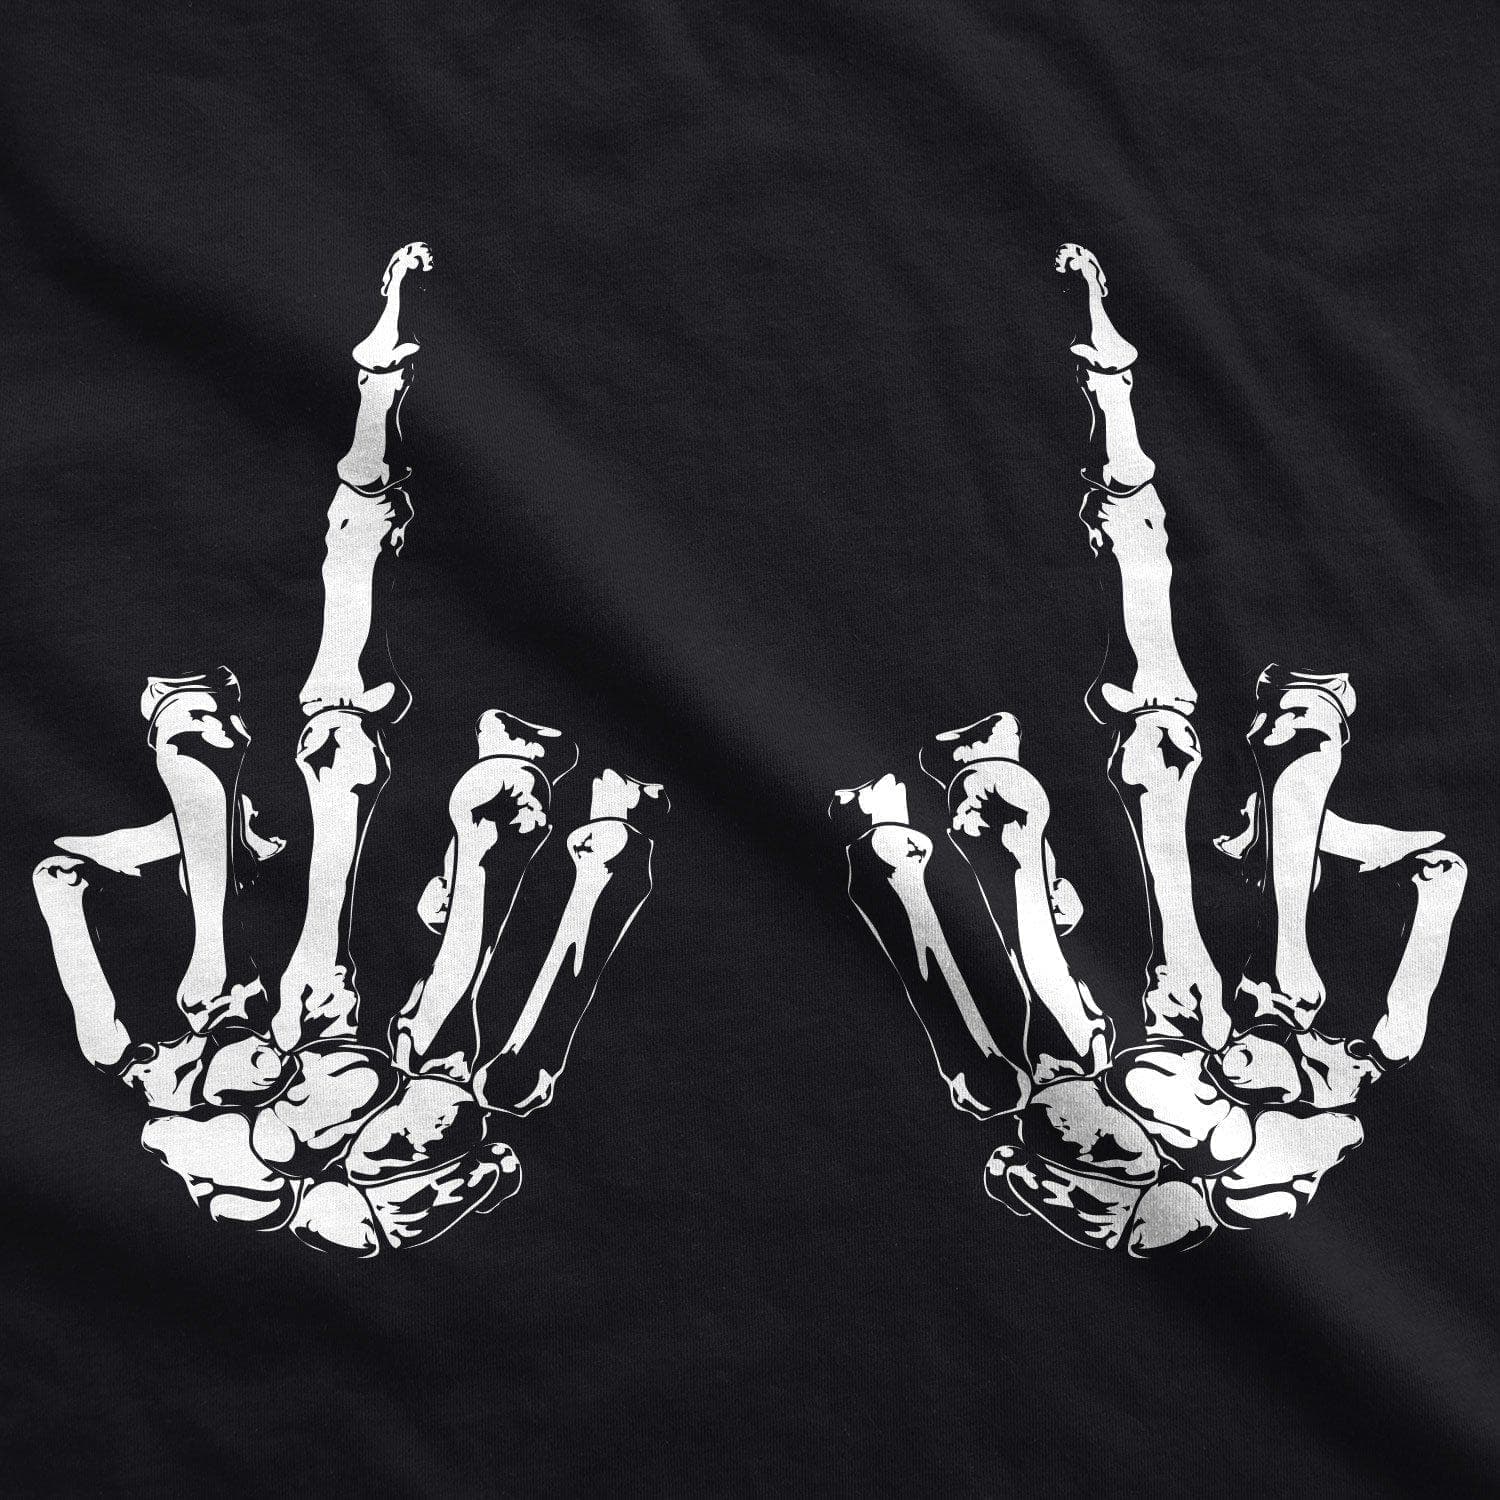 Flipping The Bones Men's Tshirt - Crazy Dog T-Shirts